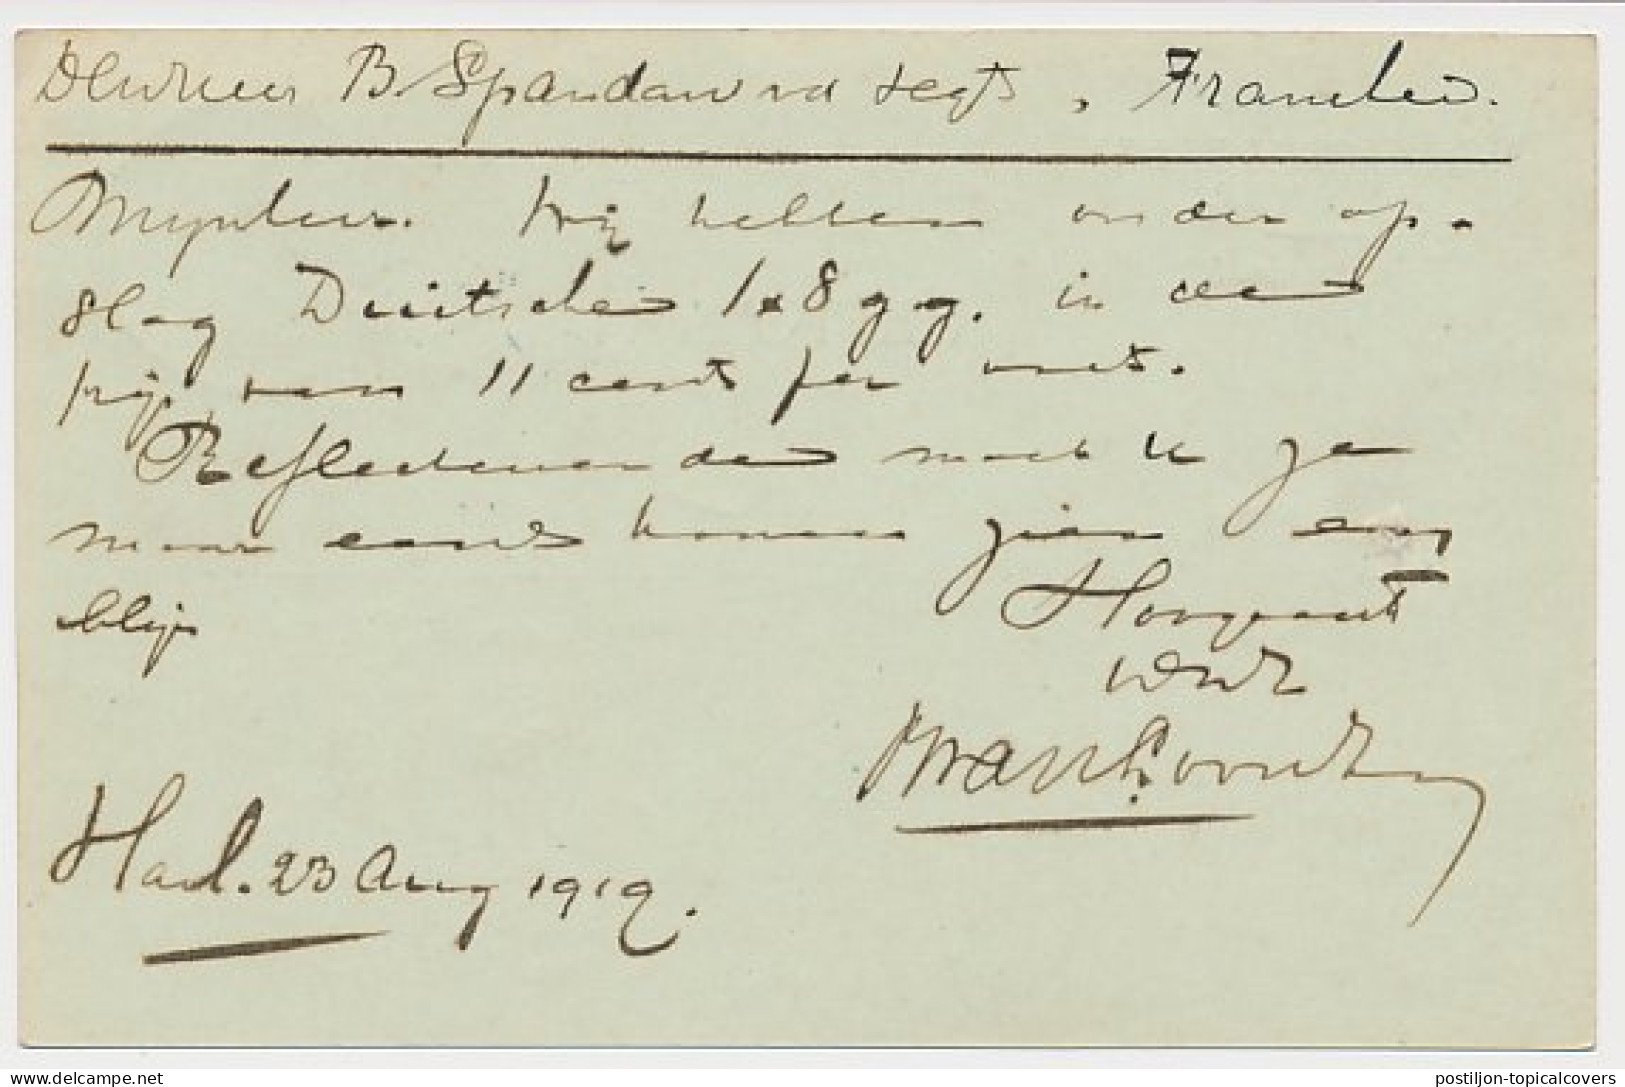 Firma Briefkaart Harlingen 1919 - B. Van Loon En Zoon - Non Classés